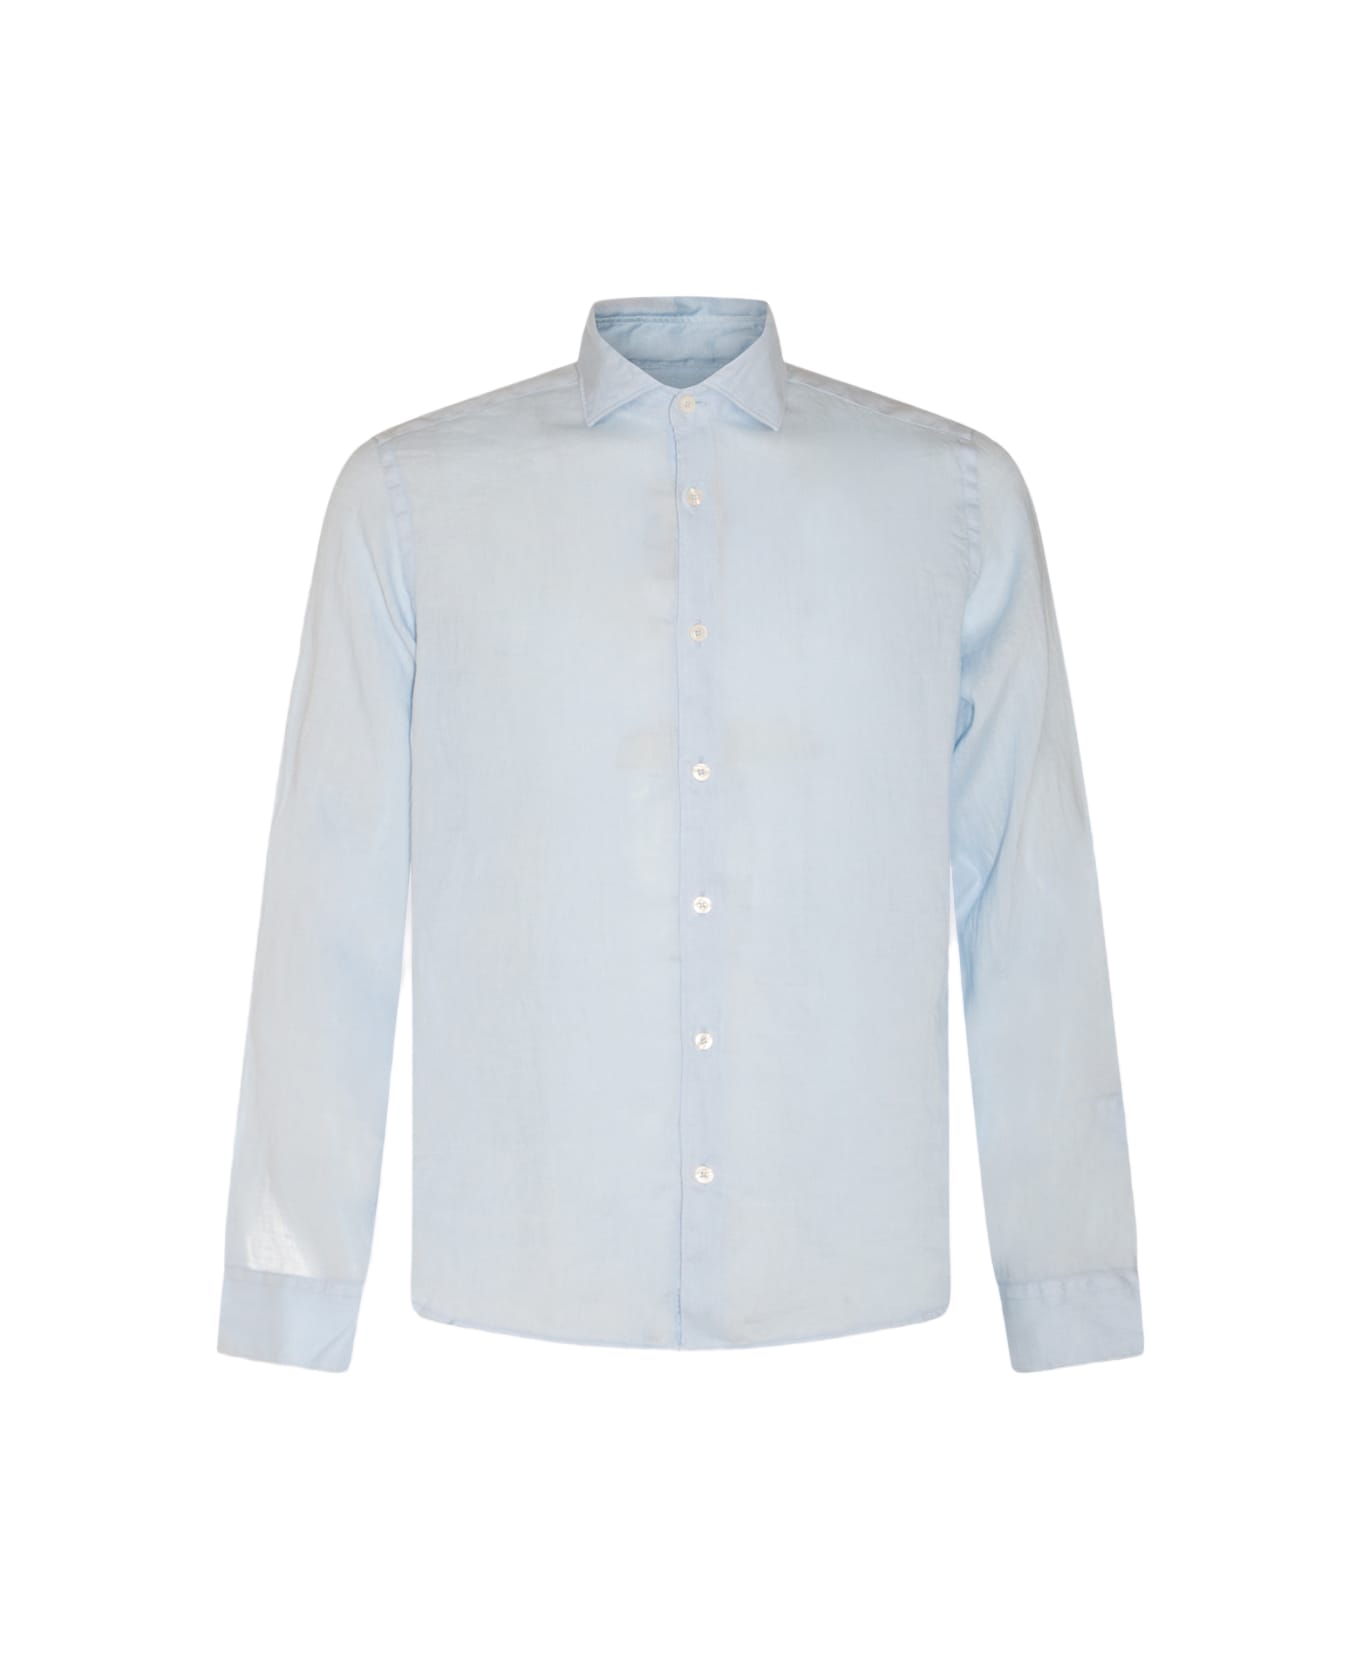 Altea Light Blue Linen Shirt - Clear Blue